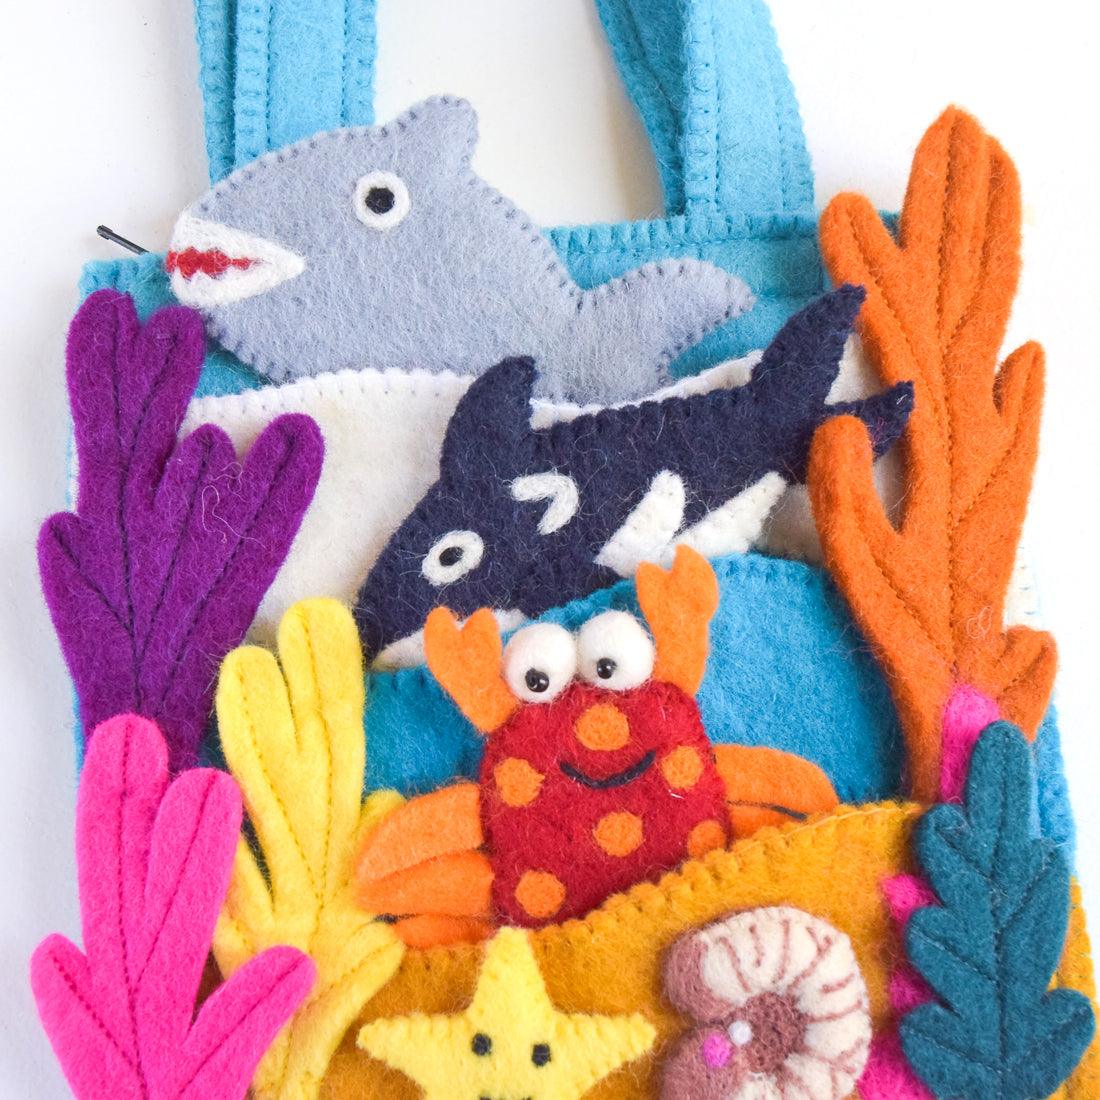 Finger Puppets - Sea Playscape Bag - Tara Treasures